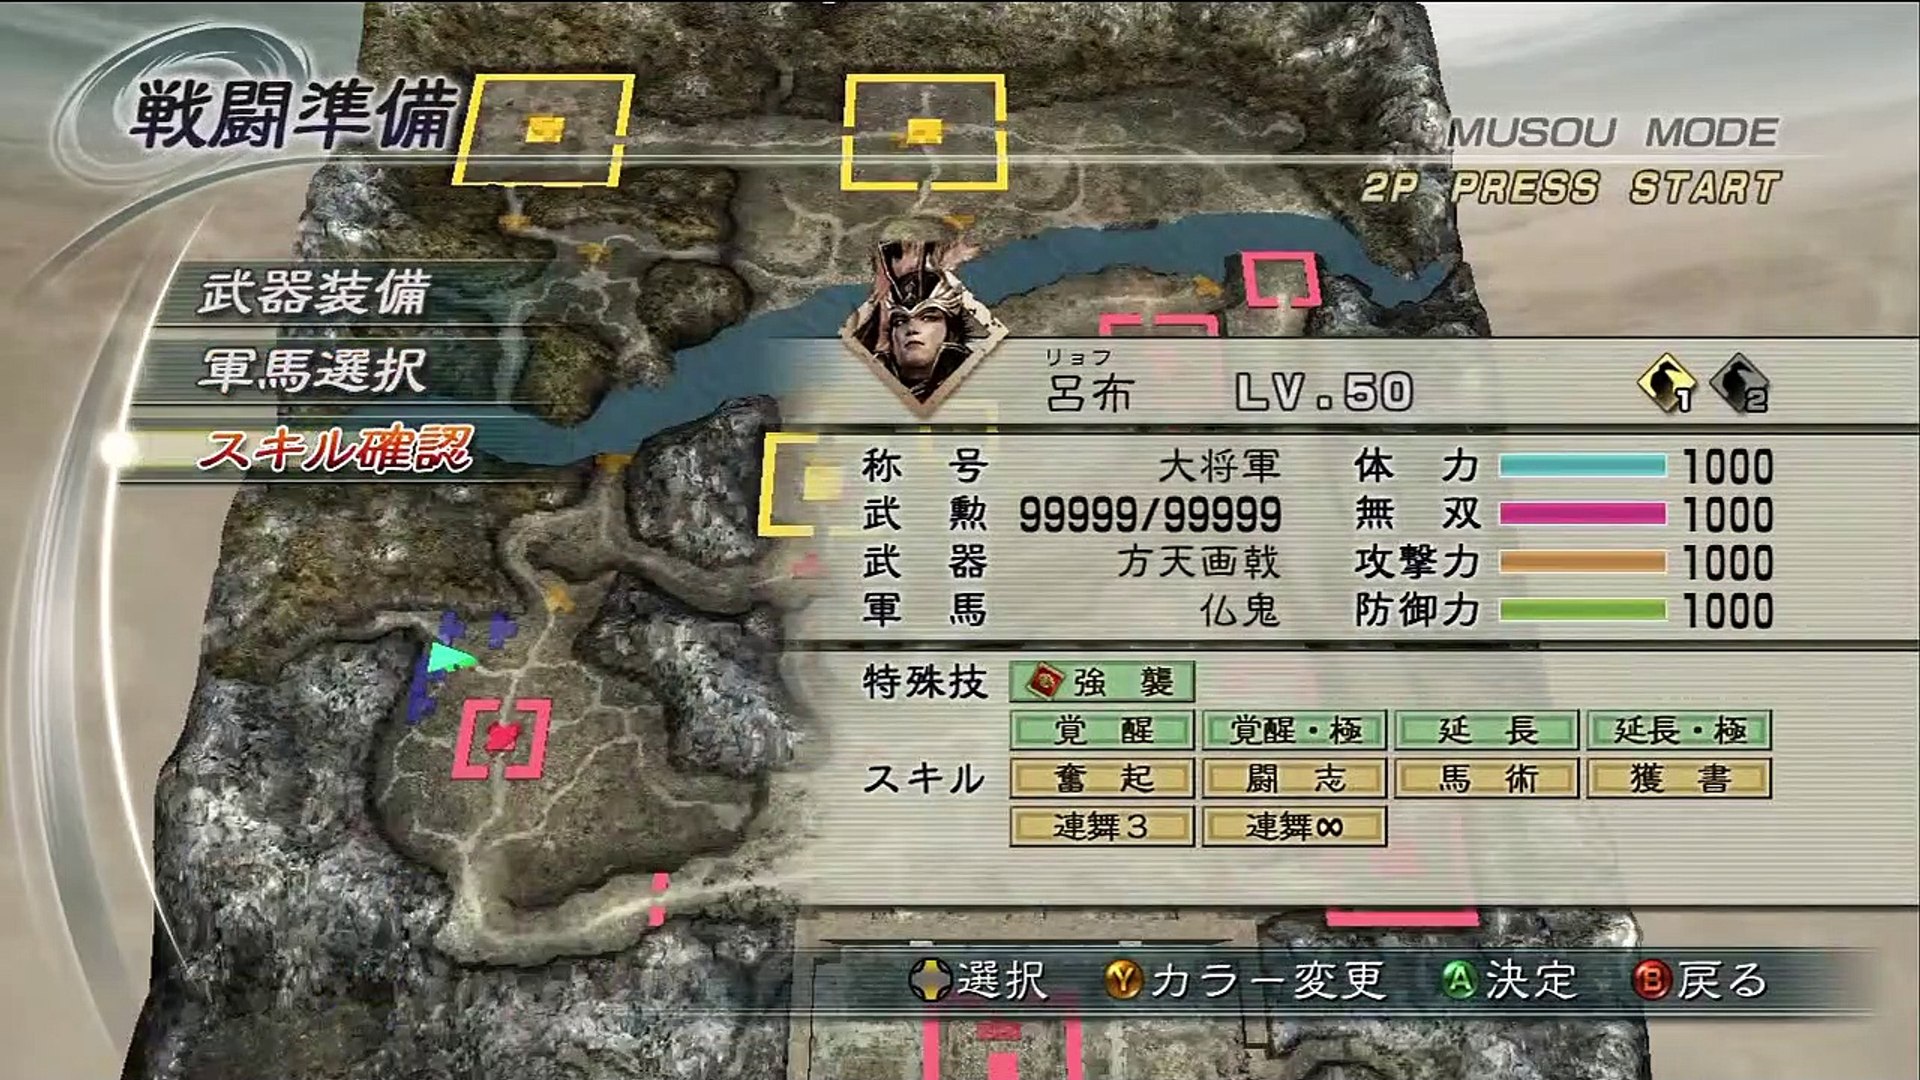 Shin Sangoku Musou 5 Lu Bu Ep. 2 Chapter 2 - Battle Of Guan Du (Jap. Ver)